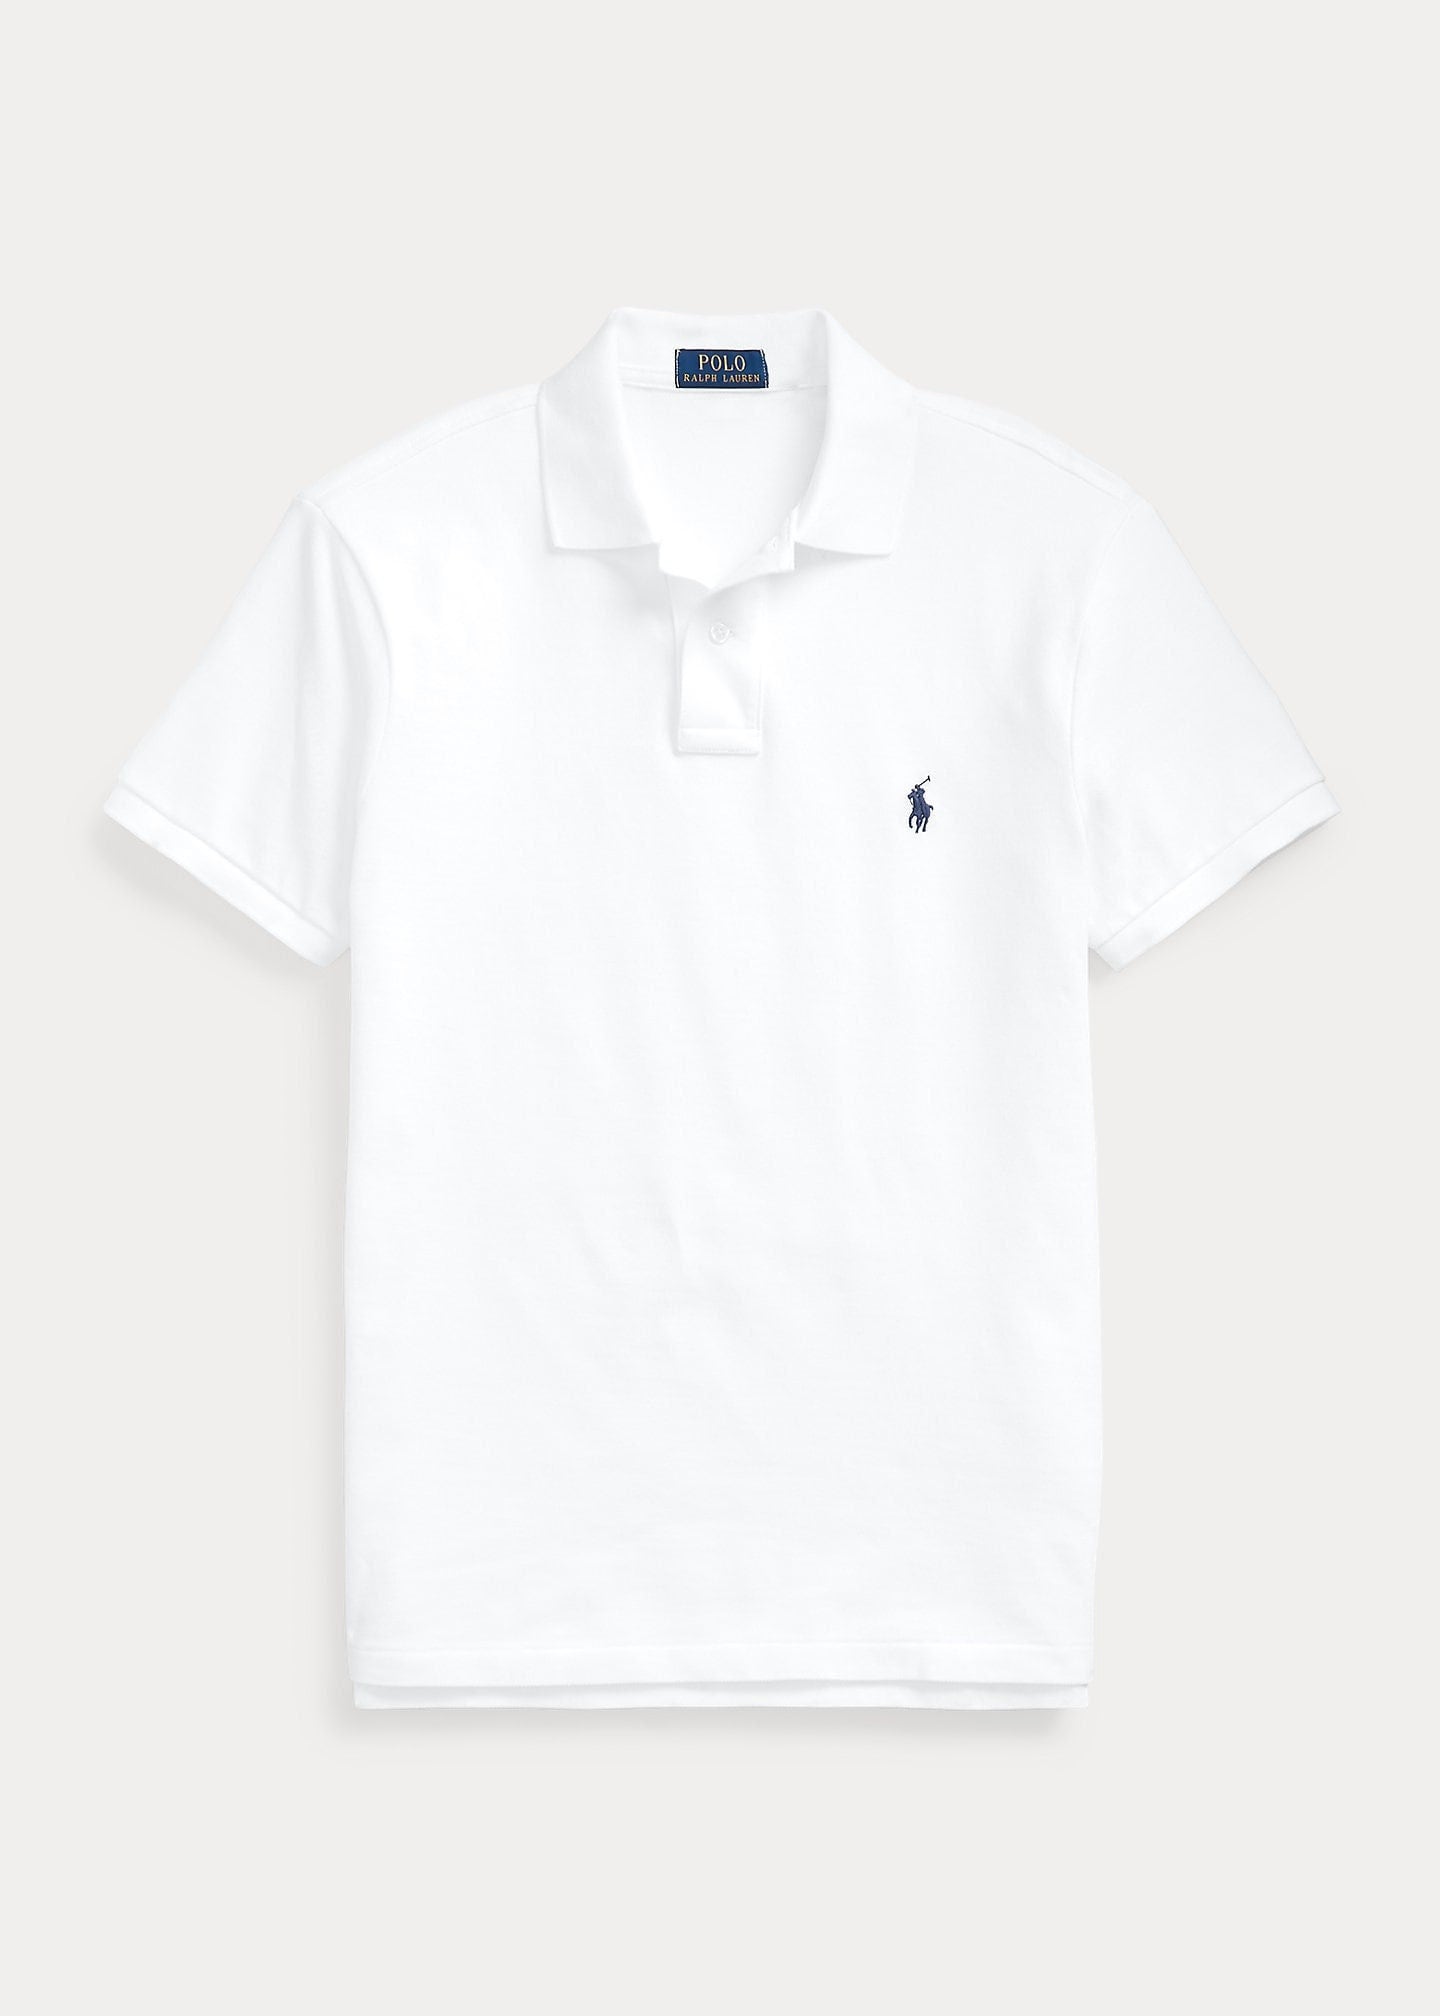 Ralph Lauren Mens Summer Polo Shirt